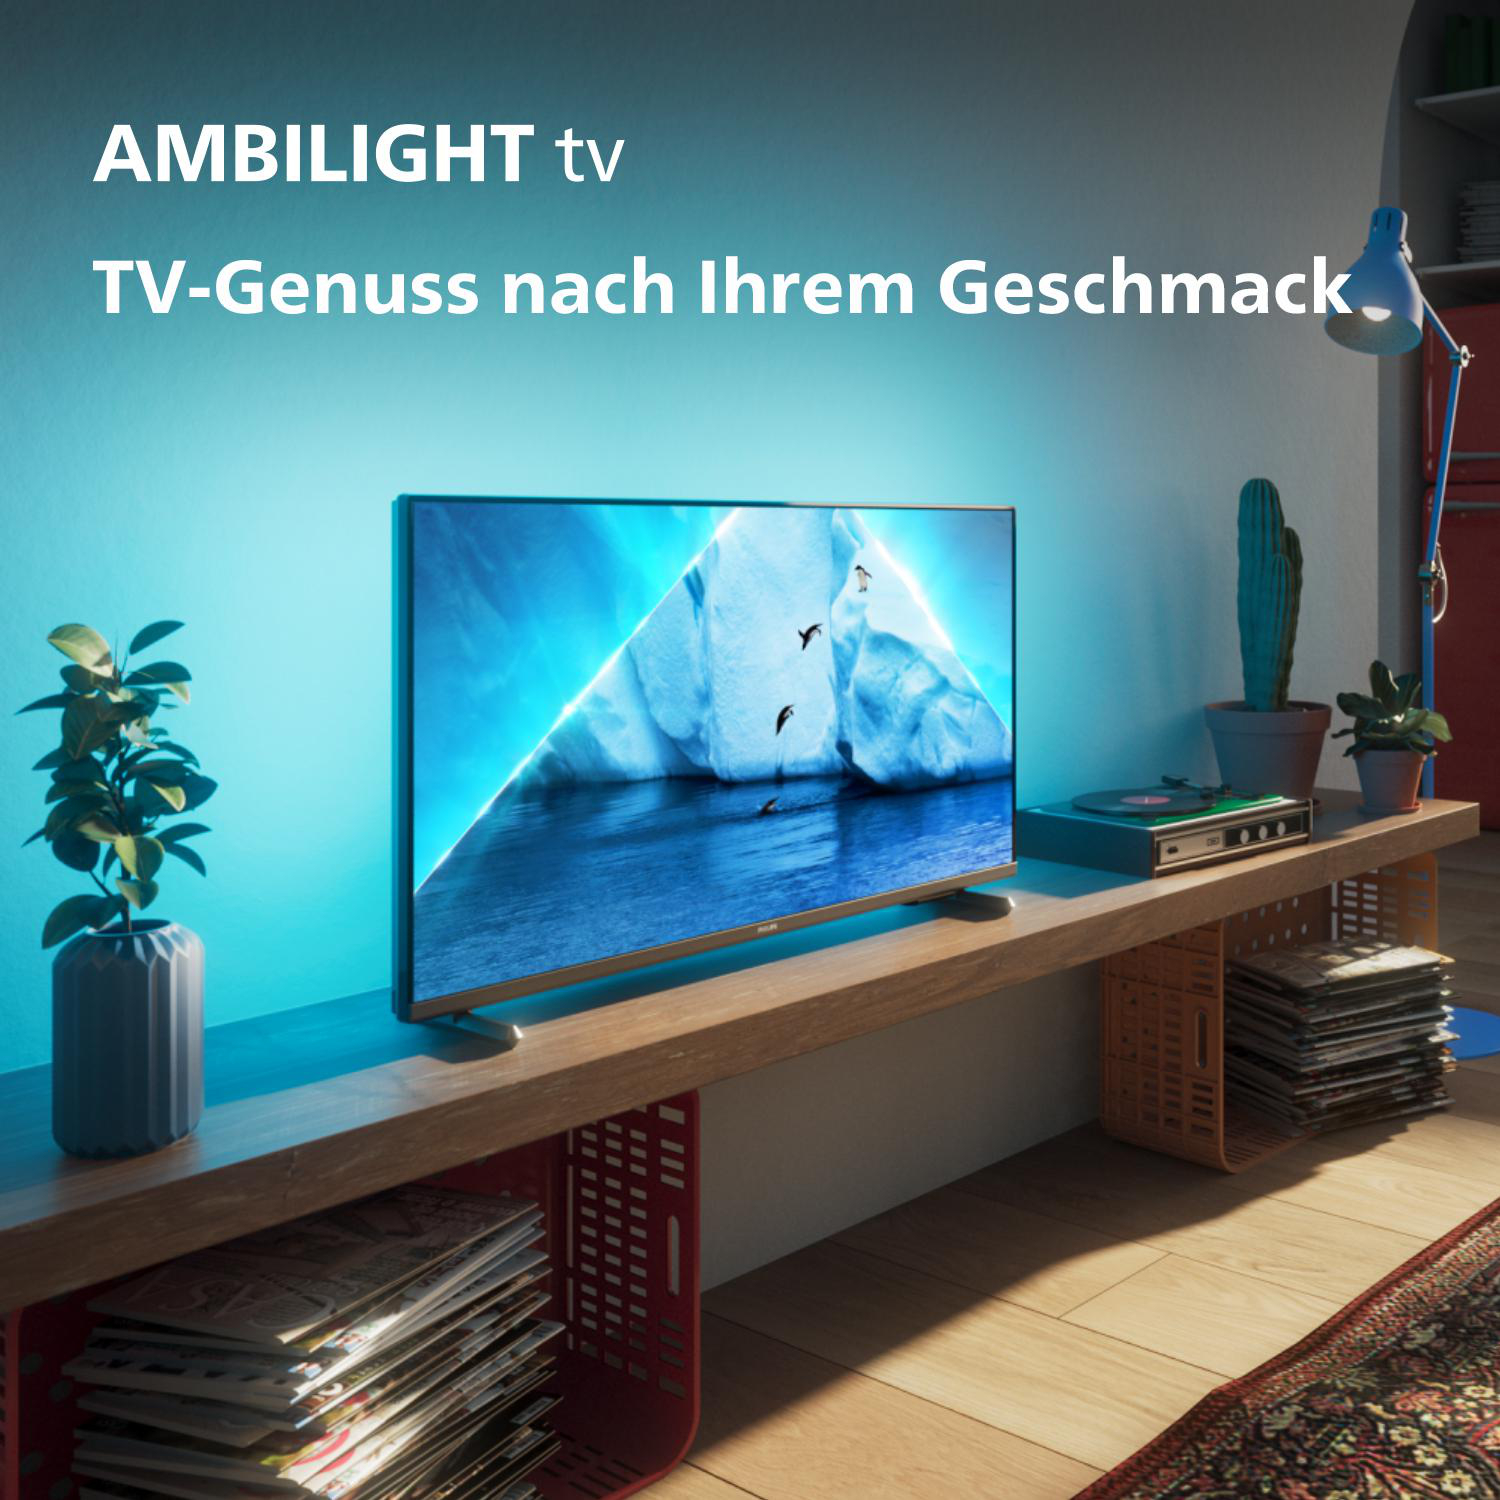 PHILIPS 32PFS6908/12 Full HD SMART TV Zoll TV) cm, 32 80 TV, (Flat, Ambilight / LED Philips Ambilight, Full-HD, Smart